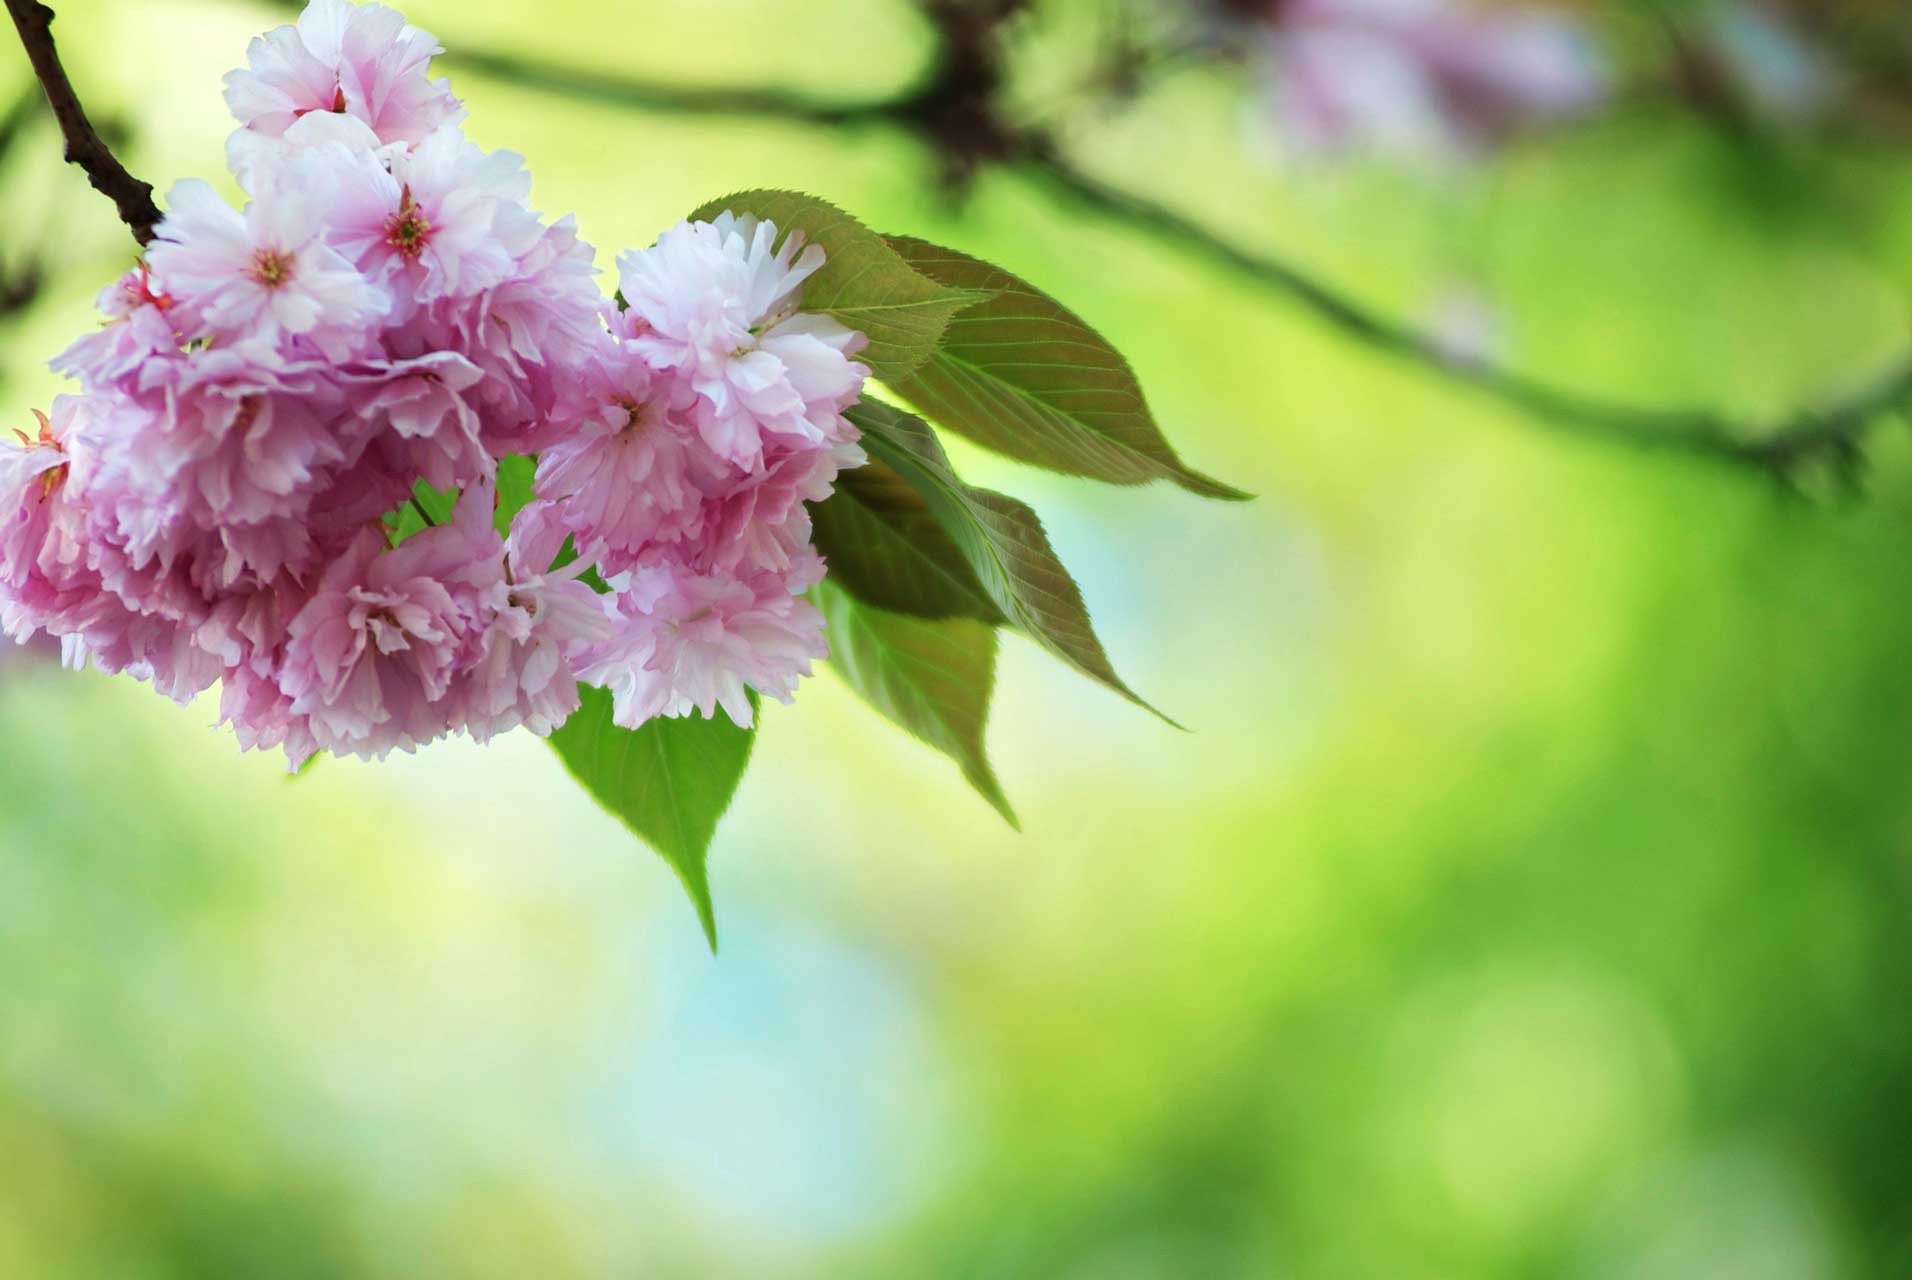 Laure-Maud_16_photographe_jardin-cerisier-japonais-2